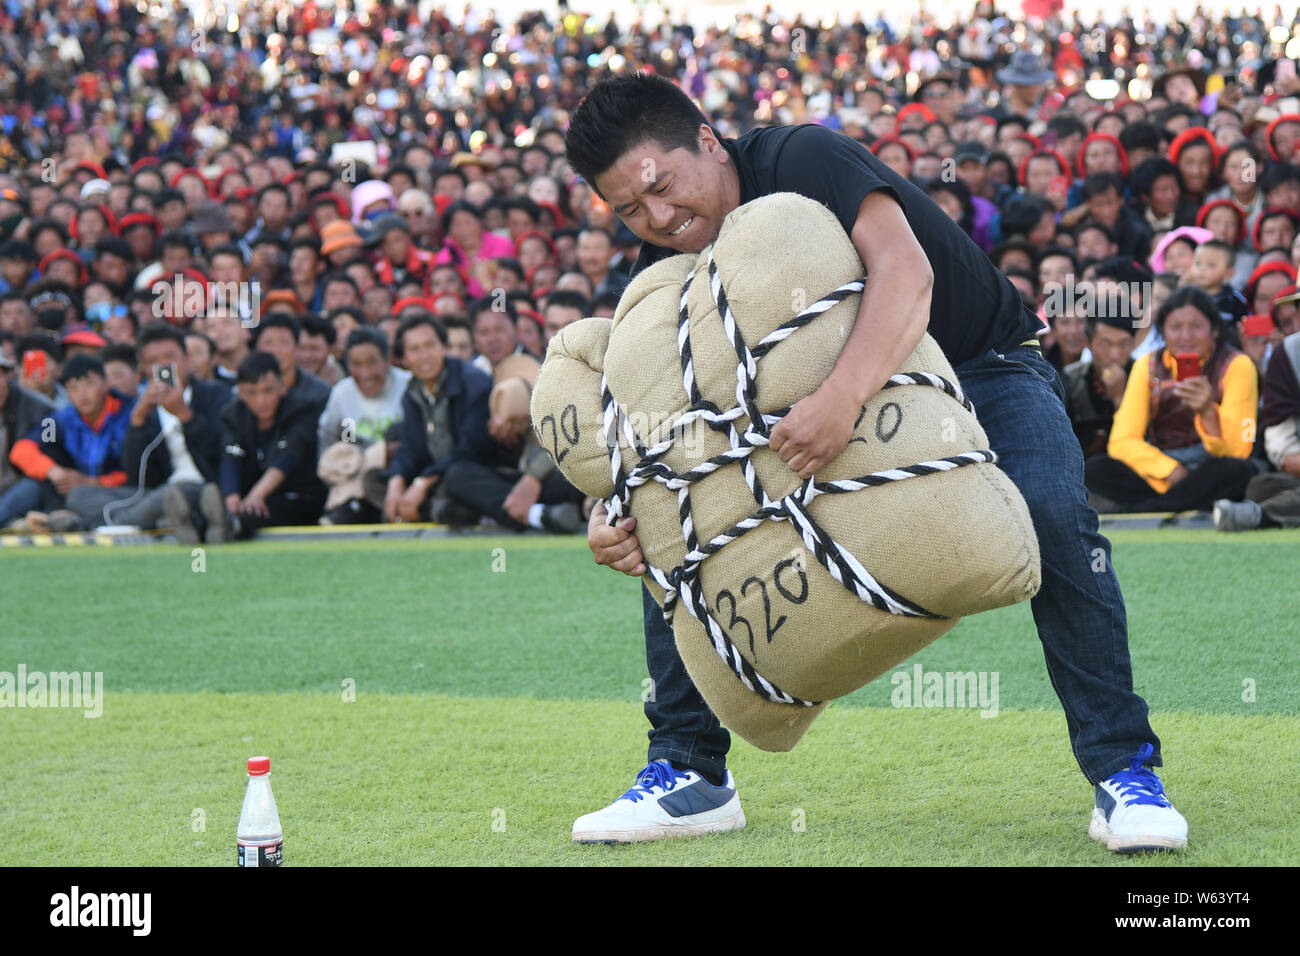 Un partecipante tenta di sollevare un contrappeso durante un uomo forte sfida nella contea di Markam, Chamdo city, a sud-ovest della Cina di regione autonoma del Tibet, 4 Settemb Foto Stock